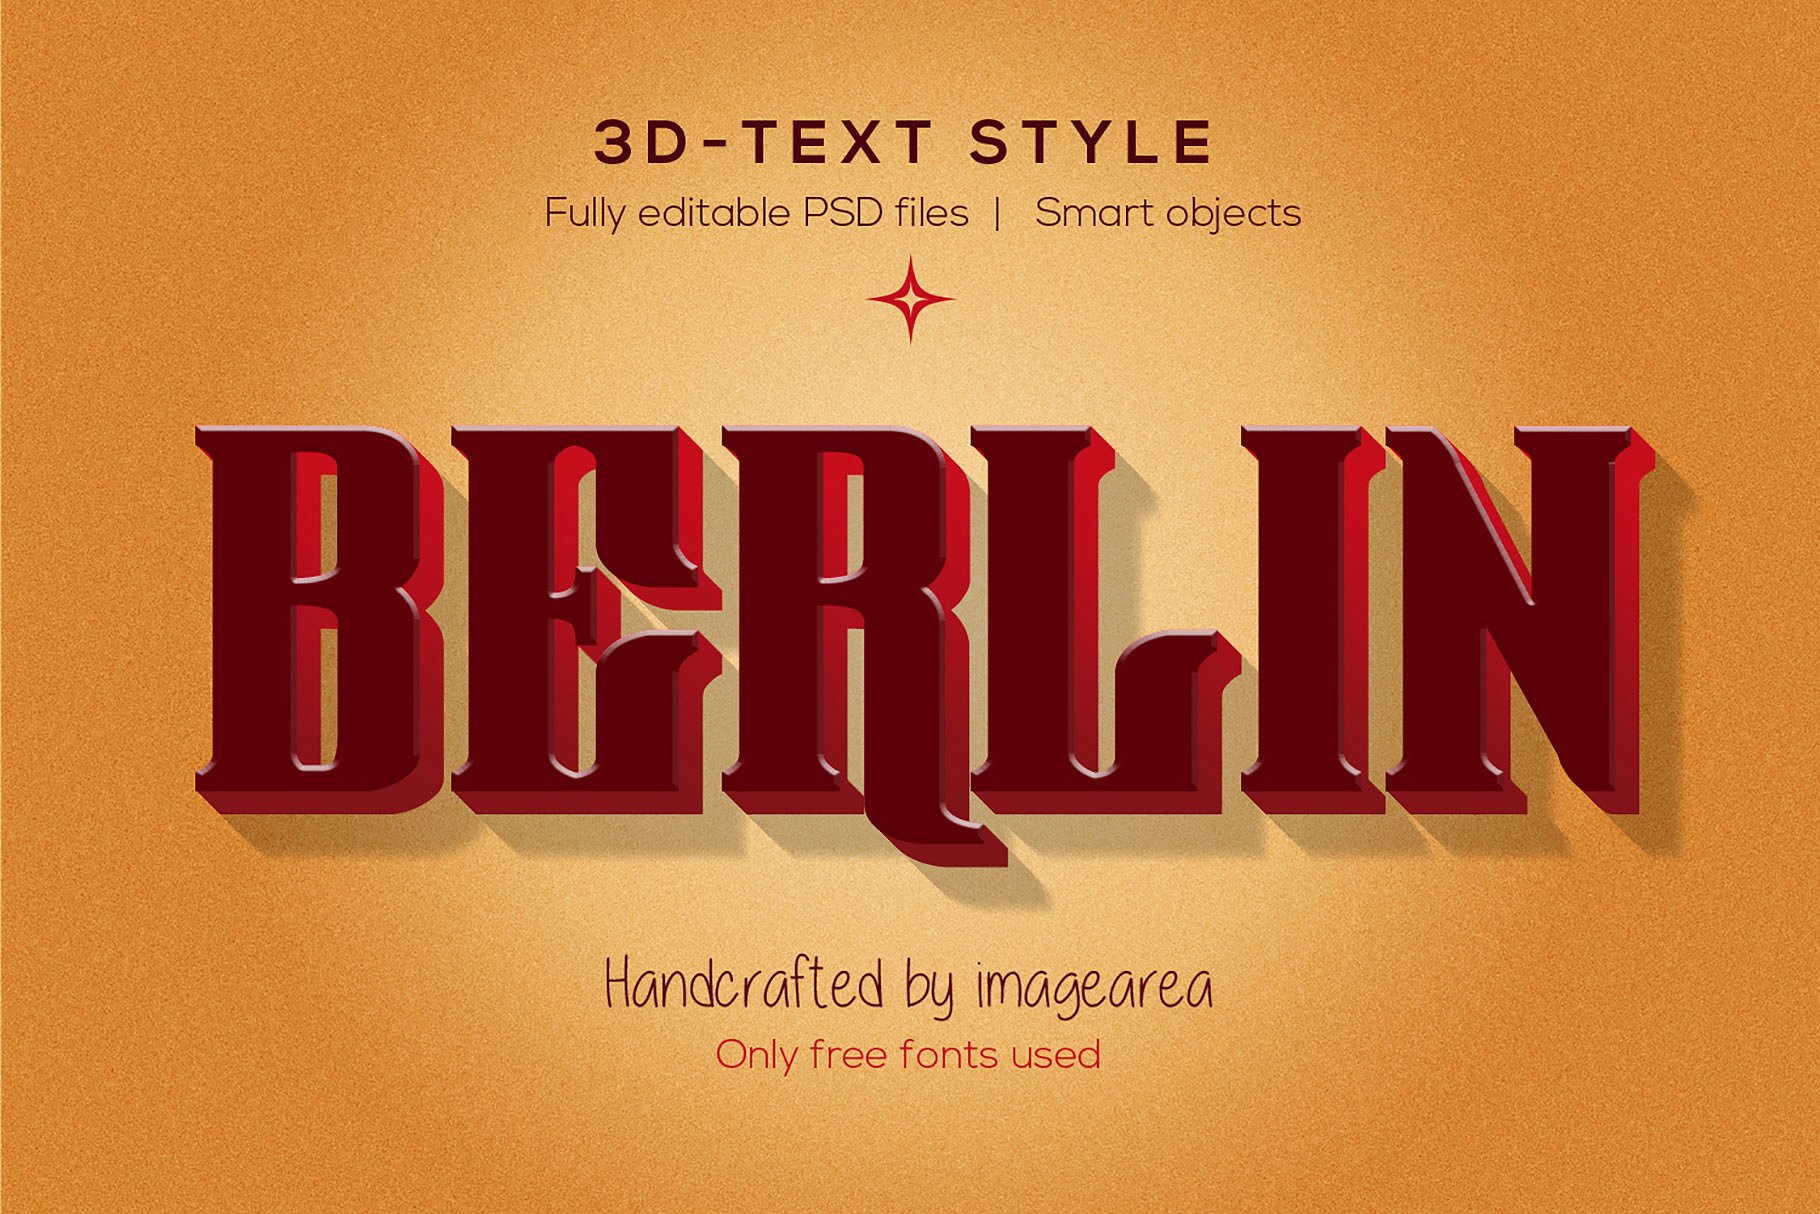 创意3D文本图层样式 Amazing 3D Text Styles插图(2)